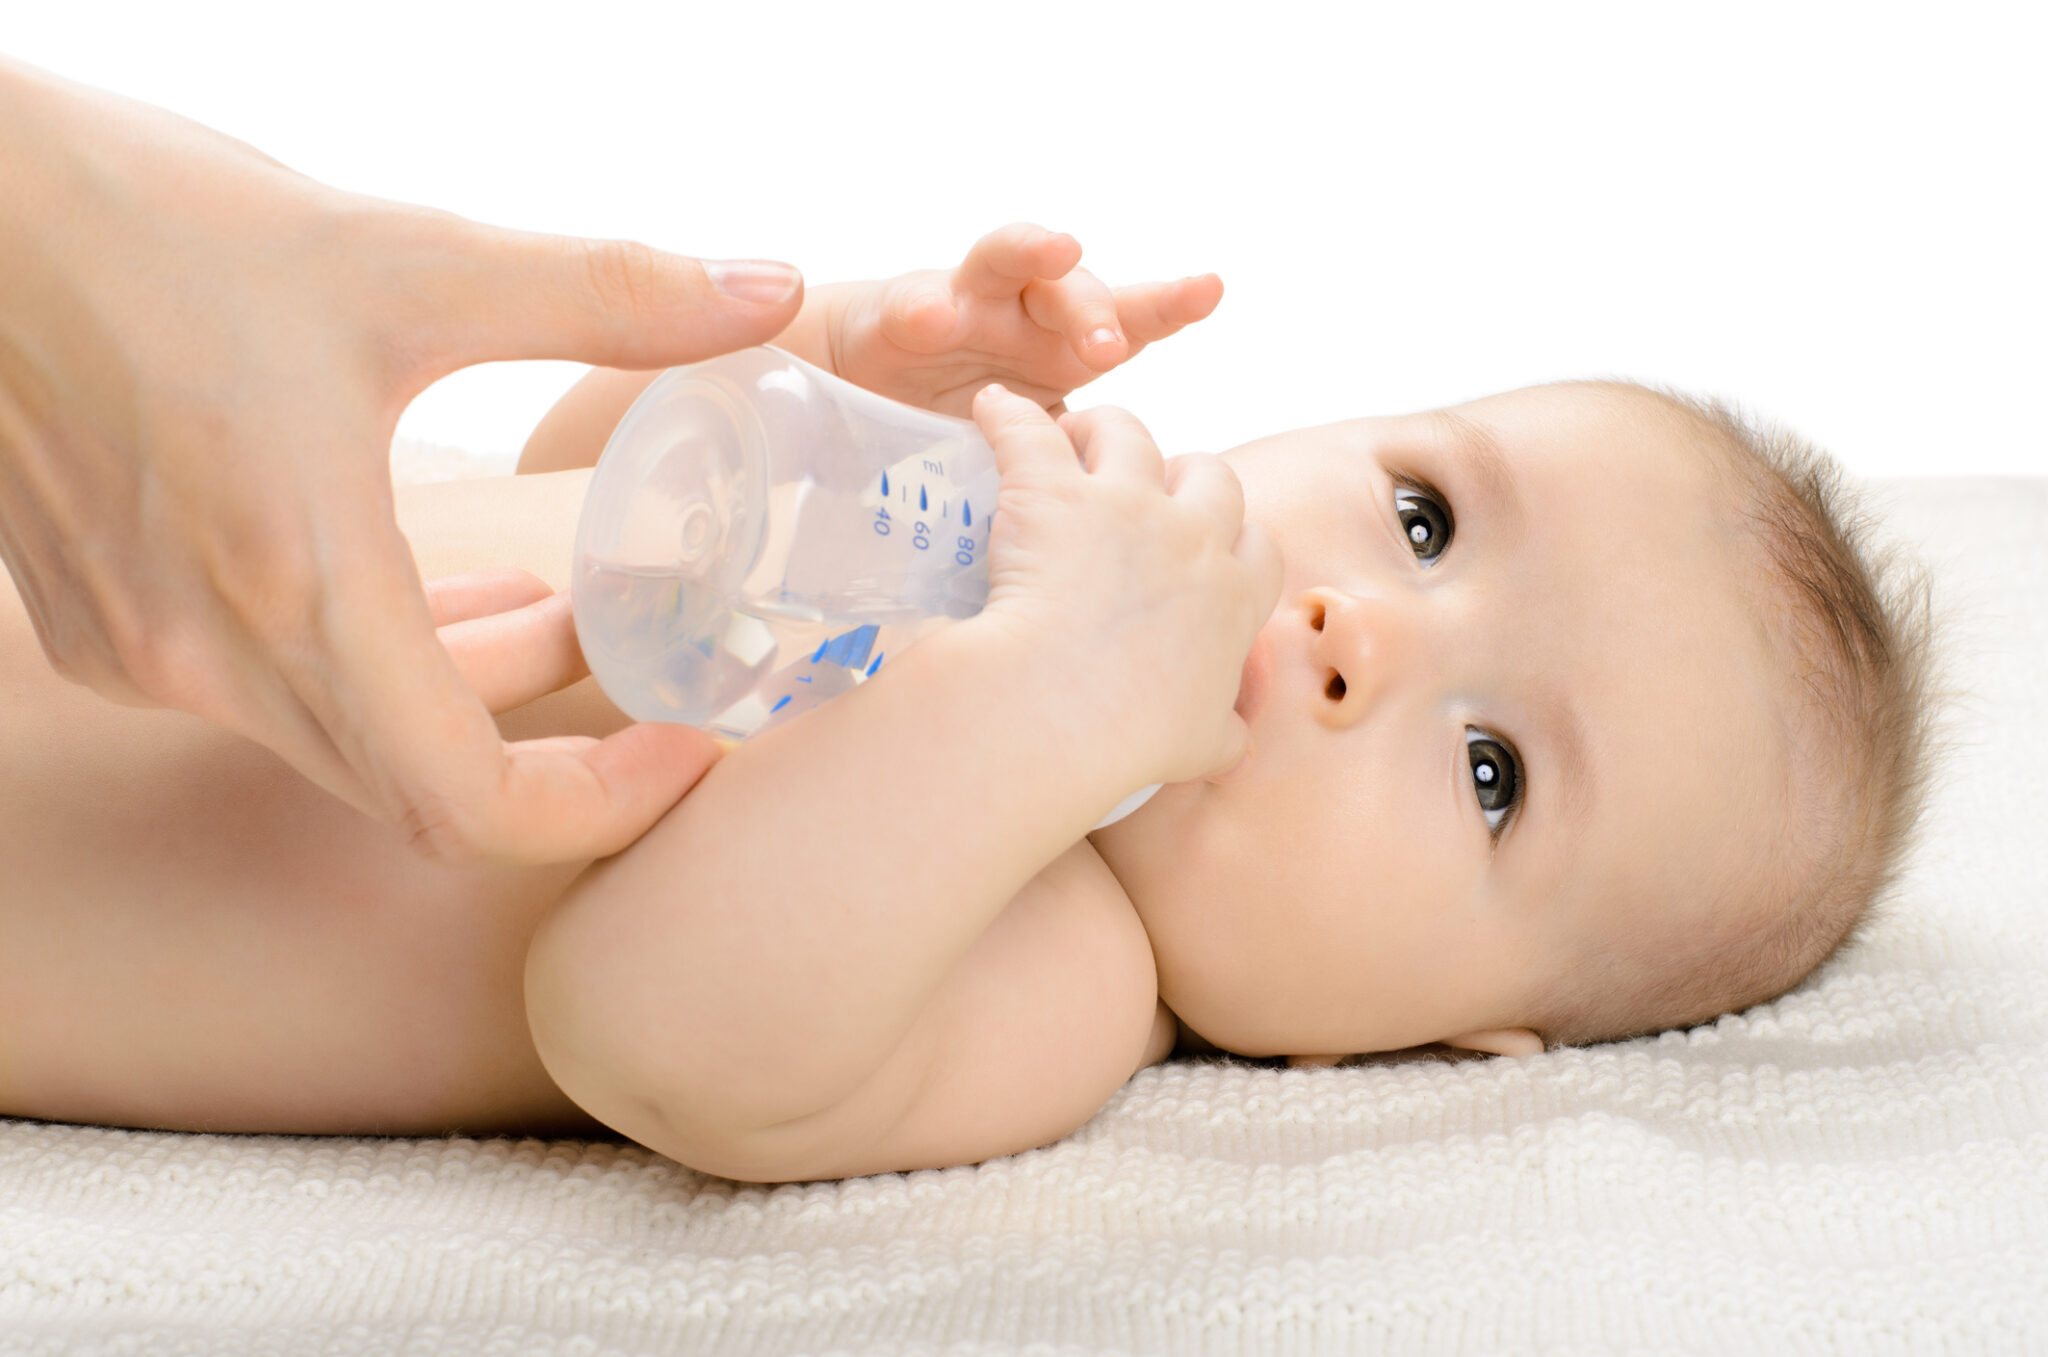 Пить воду новорожденному ребенку. Водичка для новорожденных. Грудничок в воде. Допаивание новорожденных. Вода для новорожденных детей.